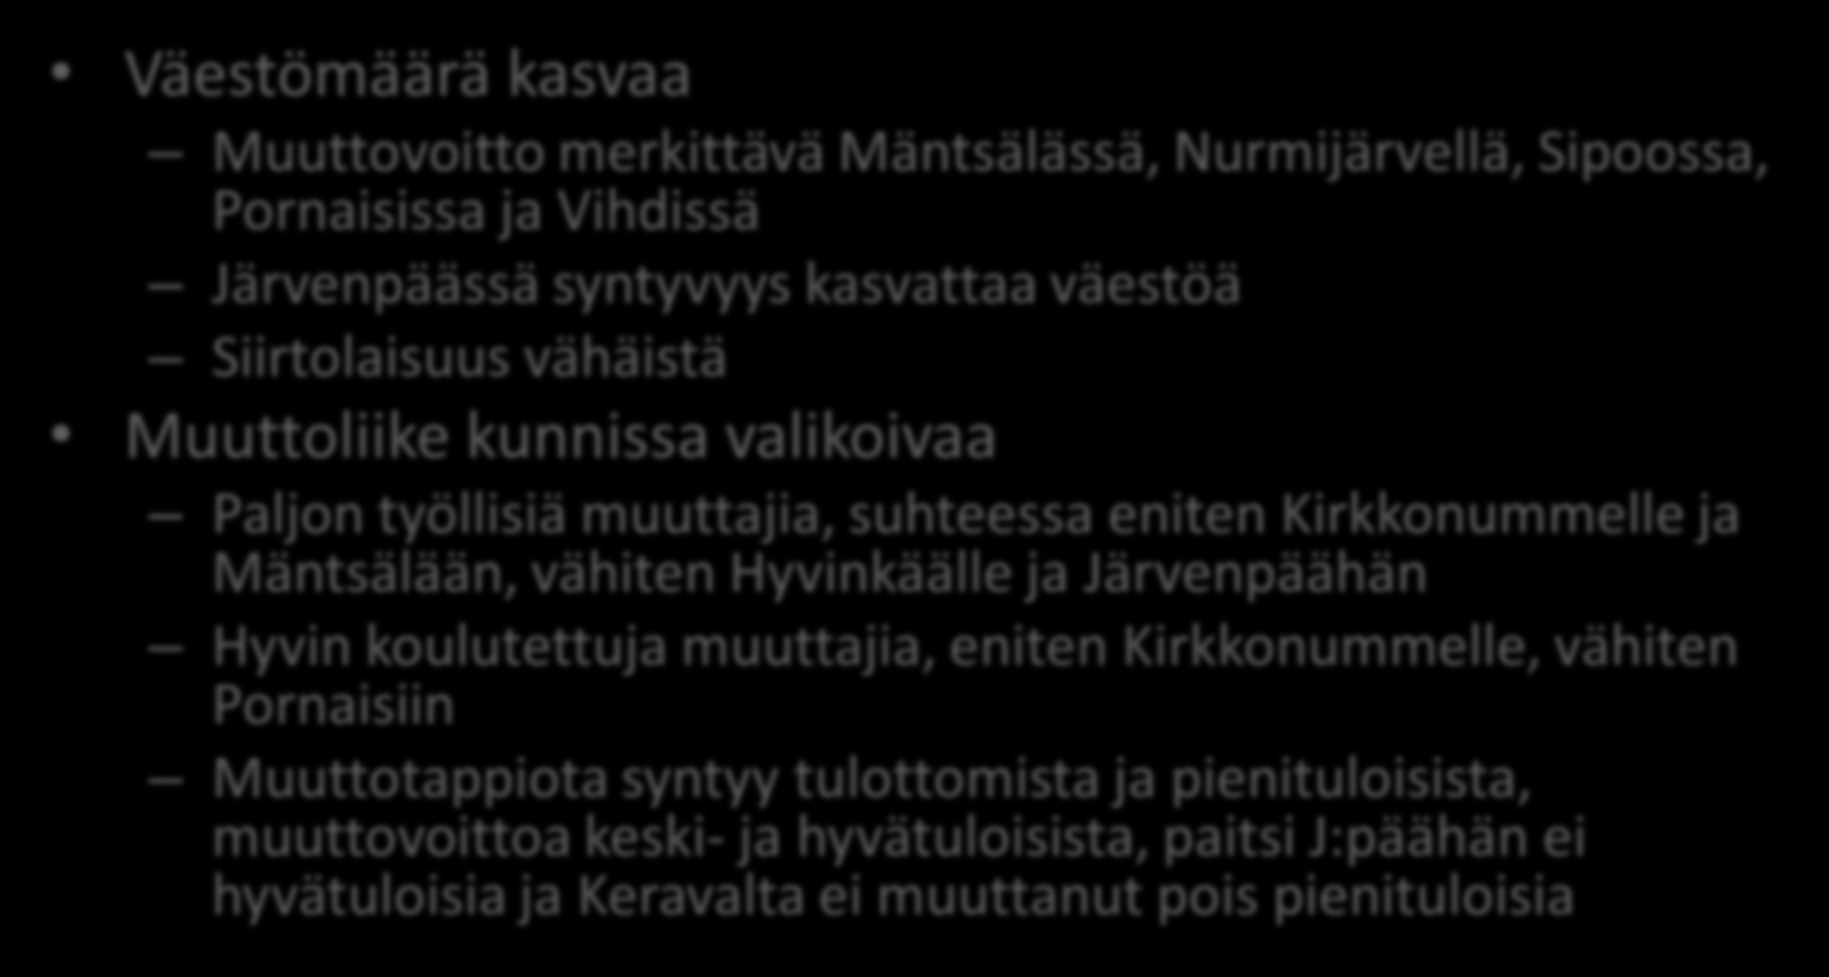 KUUMA-kunnat erilaistuvat Väestömäärä kasvaa Muuttovoitto merkittävä Mäntsälässä, Nurmijärvellä, Sipoossa, Pornaisissa ja Vihdissä Järvenpäässä syntyvyys kasvattaa väestöä Siirtolaisuus vähäistä